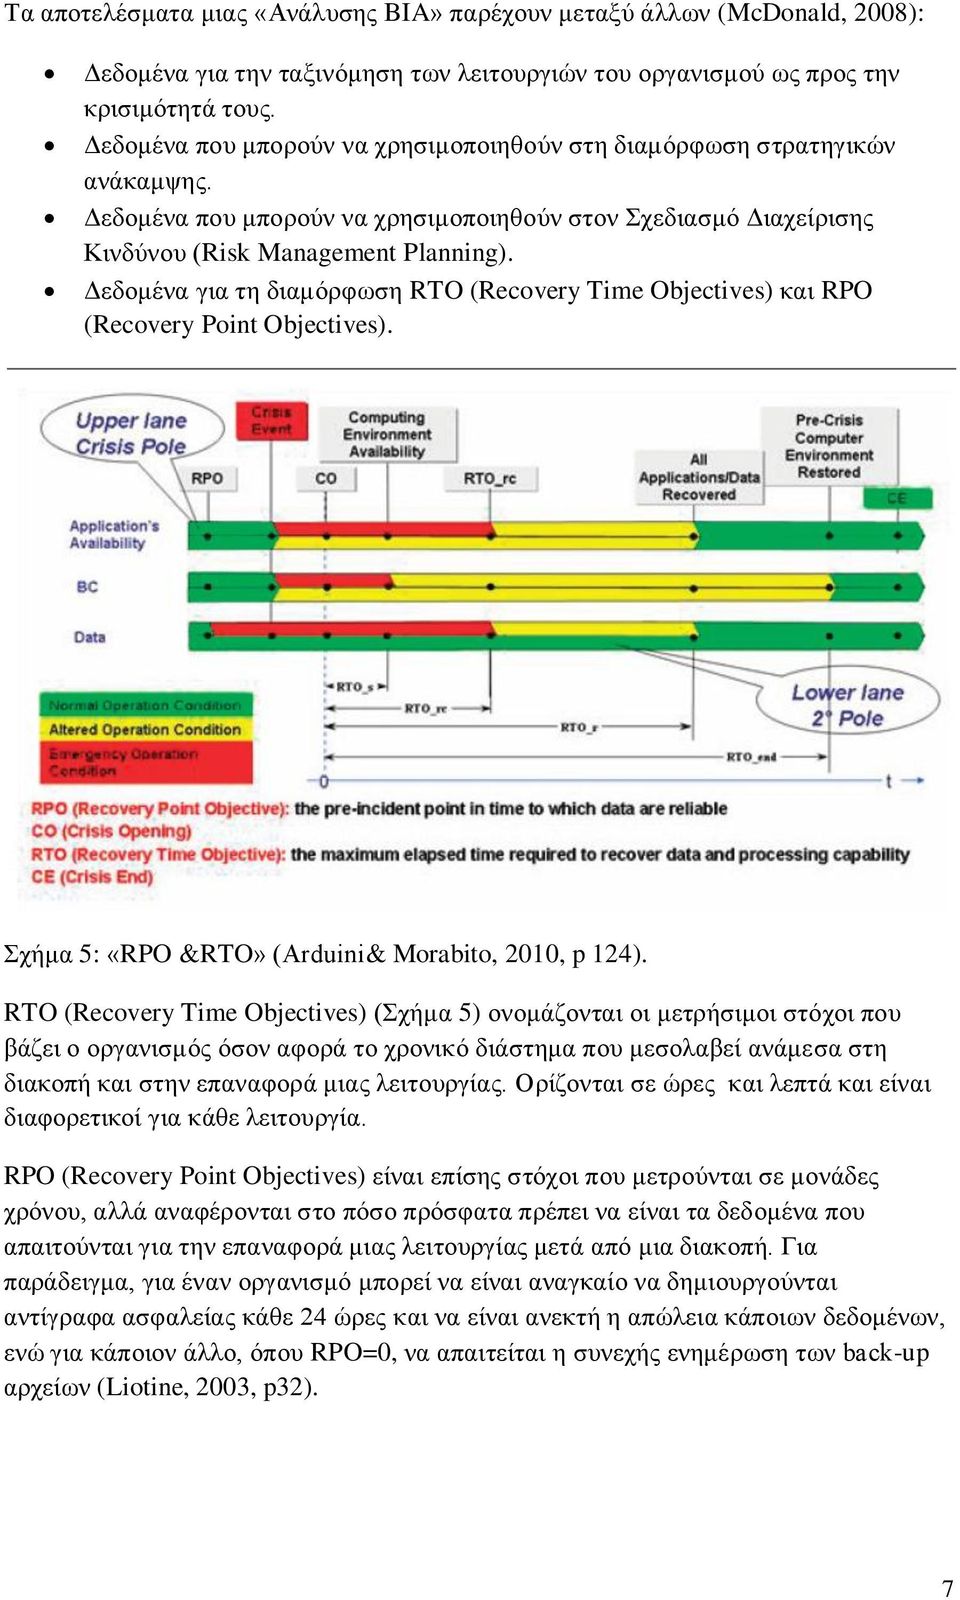 Γεδνκέλα γηα ηε δηακόξθσζε RTO (Recovery Time Objectives) θαη RPO (Recovery Point Objectives). ρήκα 5: «RPO &RTO» (Arduini& Morabito, 2010, p 124).